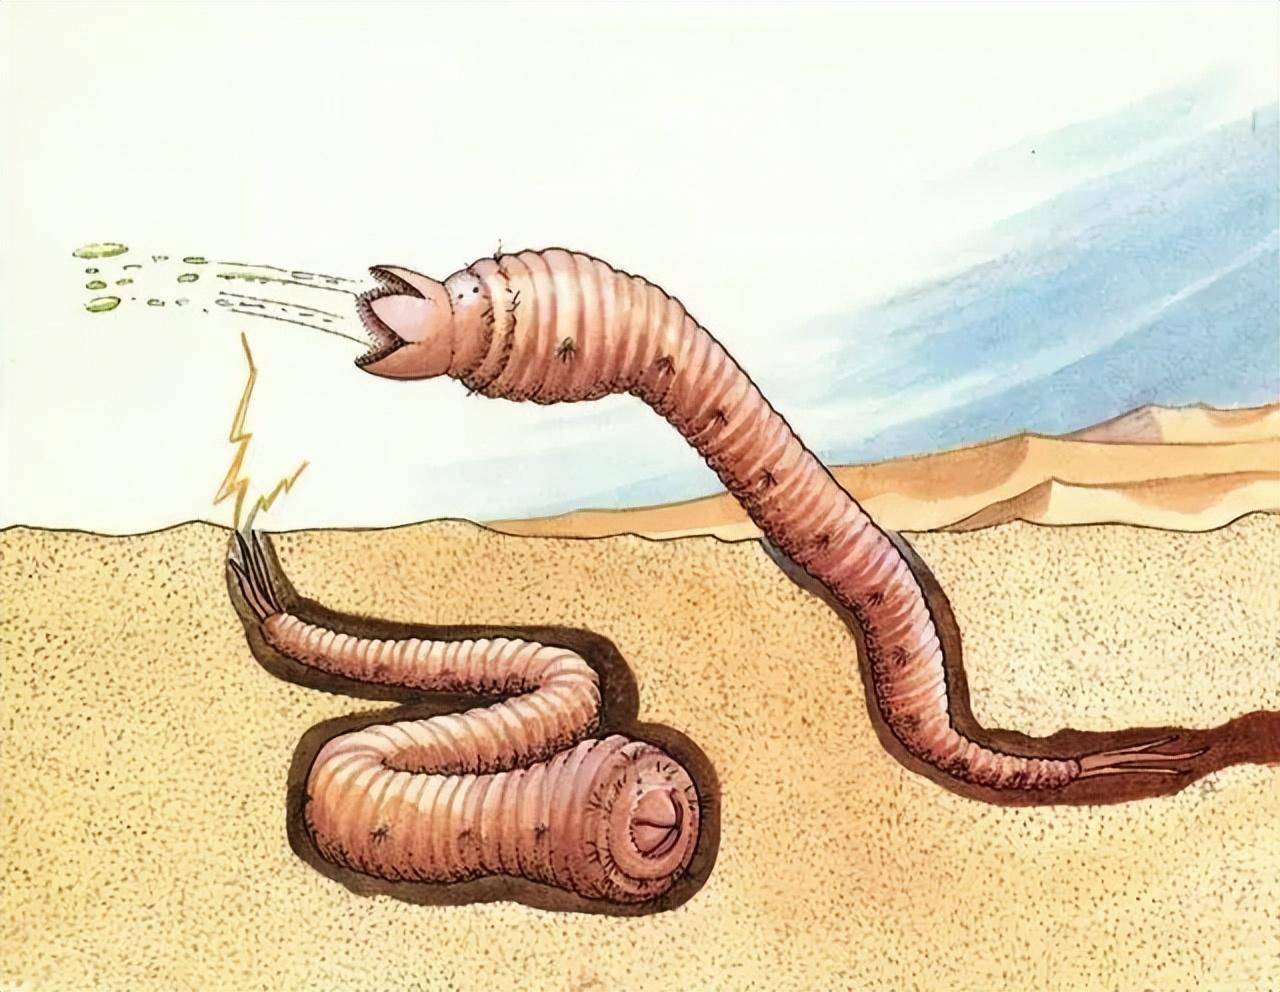 电影《沙丘》中巨型沙虫的原型,传说中的神秘生物—蒙古大蠕虫!